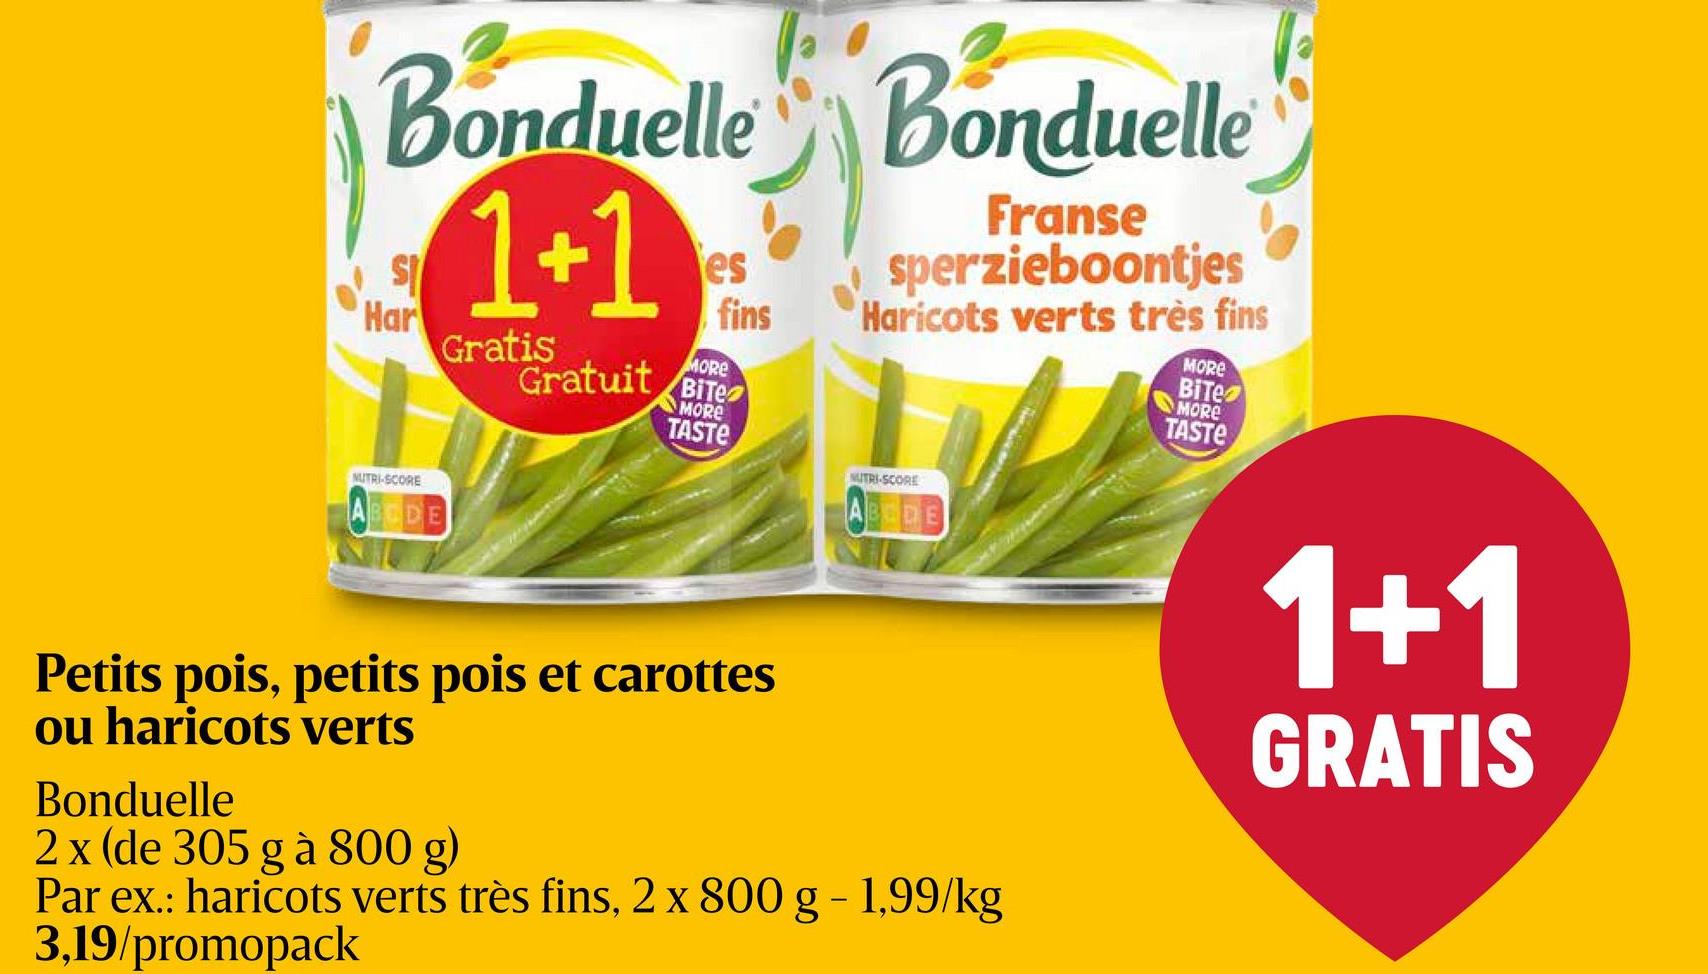 Haricots verts | Très fins + 1 gratis 2x800g Bonduelle haricots verts très fins. Rangé. 1+1 gratuit.